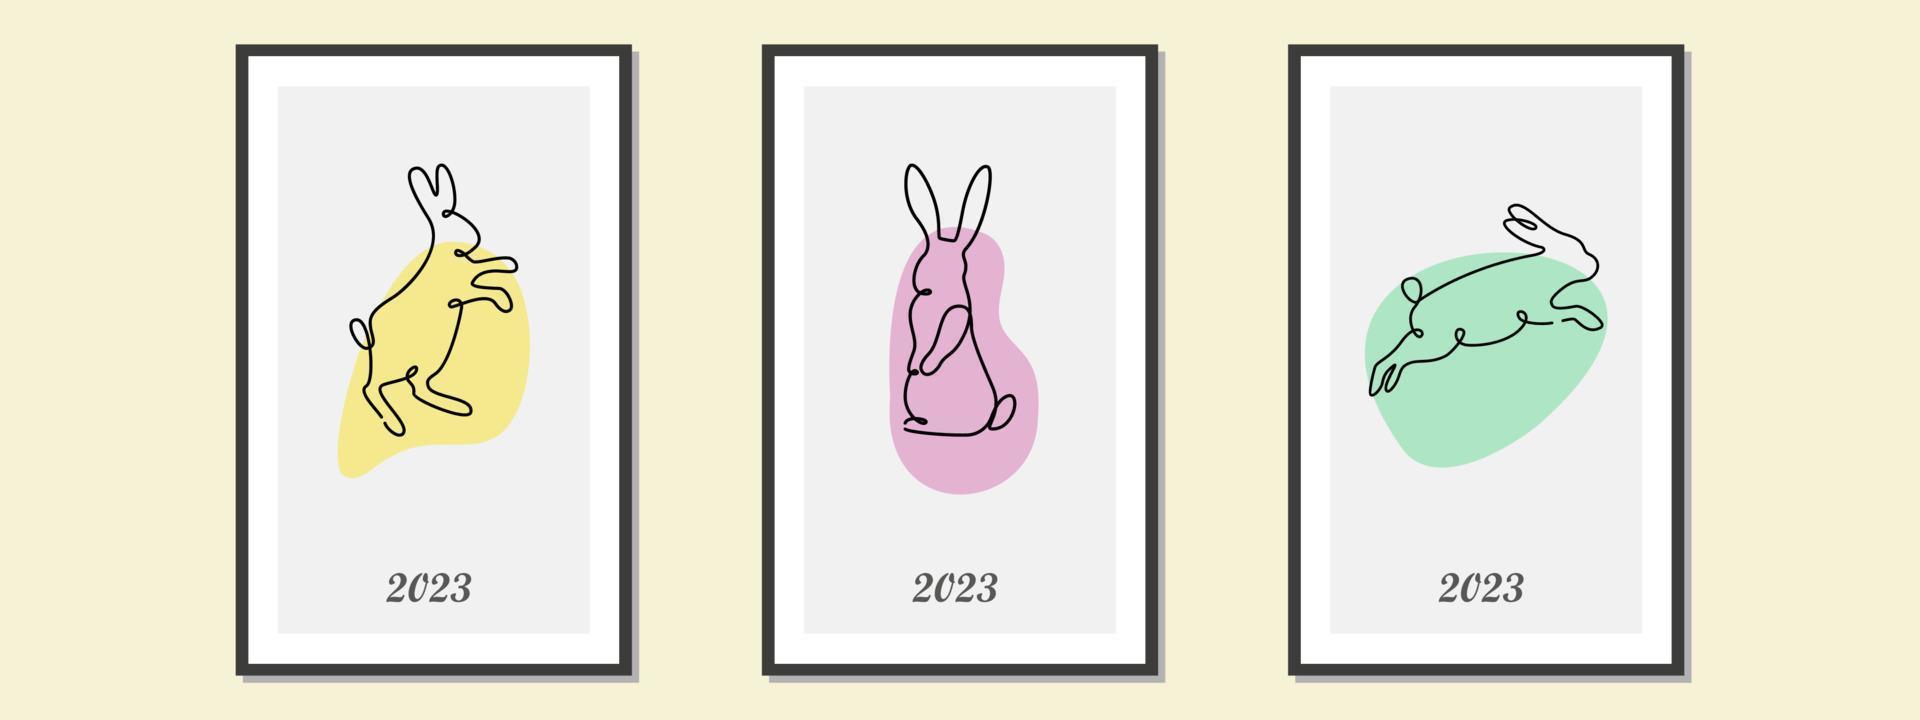 uppsättning av annorlunda svart kaniner silhuetter, isolerat på en färgrik bakgrund för design använda sig av. silhuetter av ny år kaniner i enkel ett linje stil. 2023 år av de kanin. jul vektor. vektor